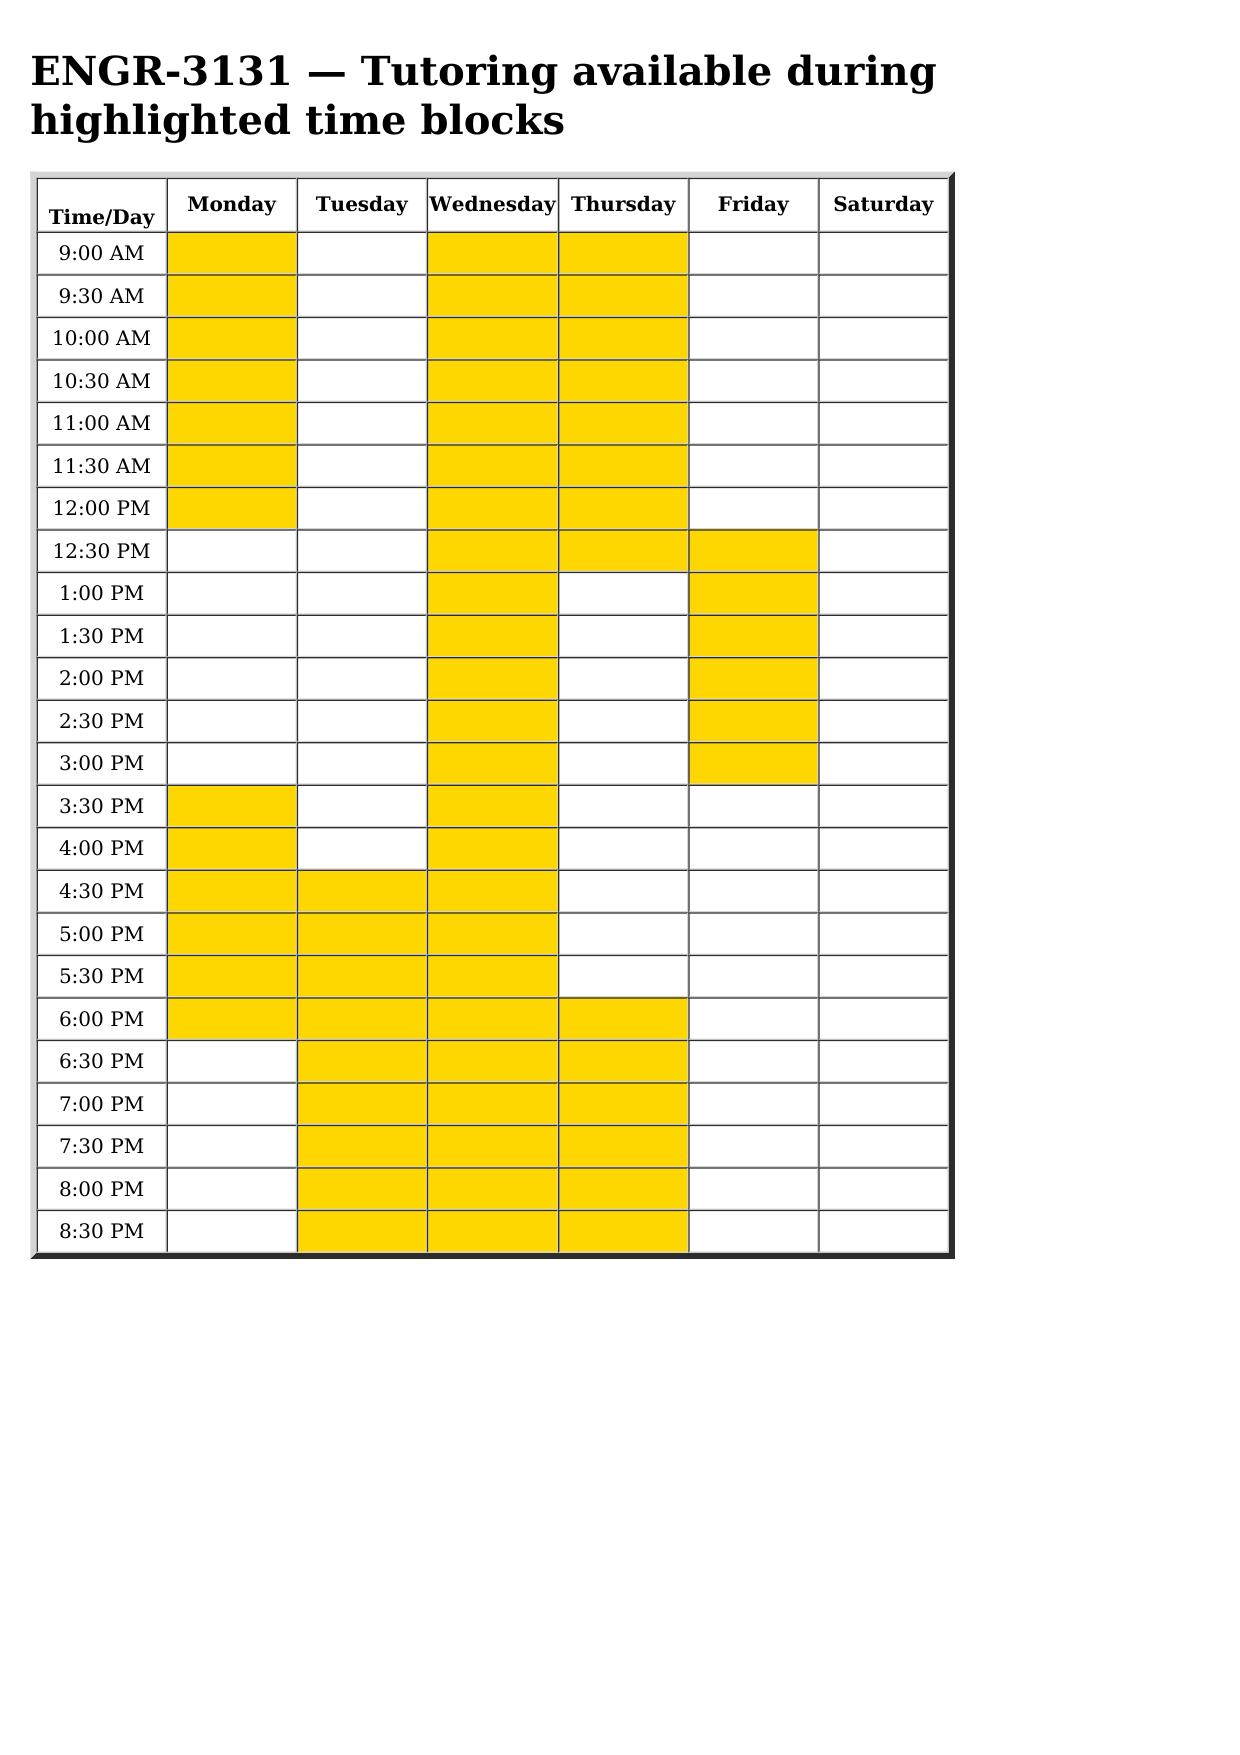 engr 3131 schedule